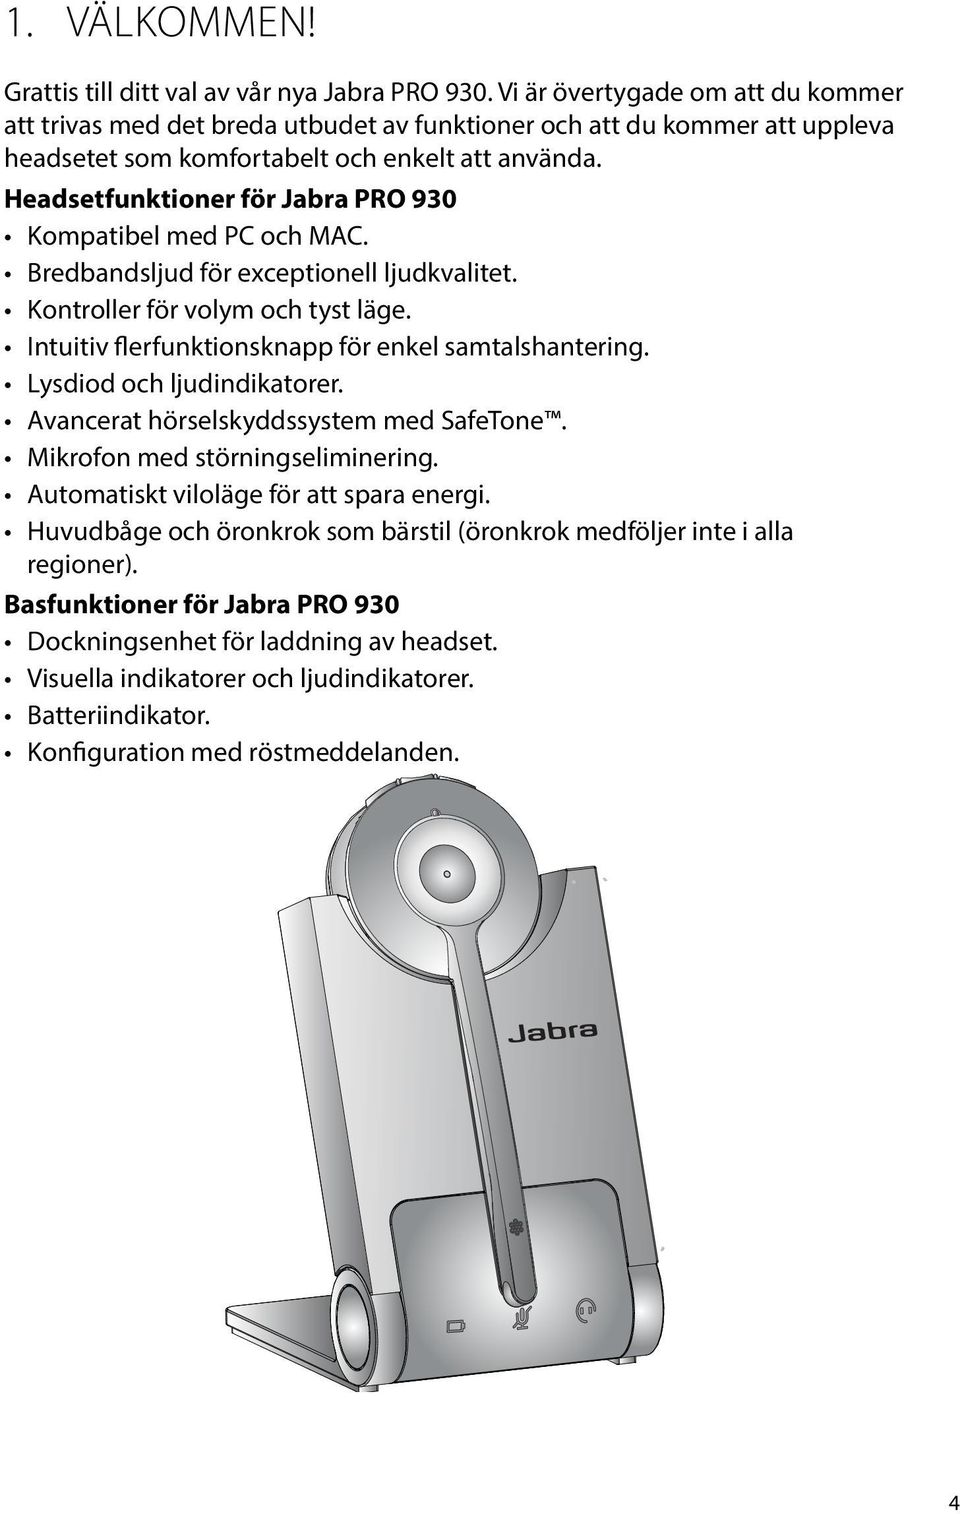 Headsetfunktioner för Jabra PRO 930 Kompatibel med PC och MAC. Bredbandsljud för exceptionell ljudkvalitet. Kontroller för volym och tyst läge. Intuitiv flerfunktionsknapp för enkel samtalshantering.